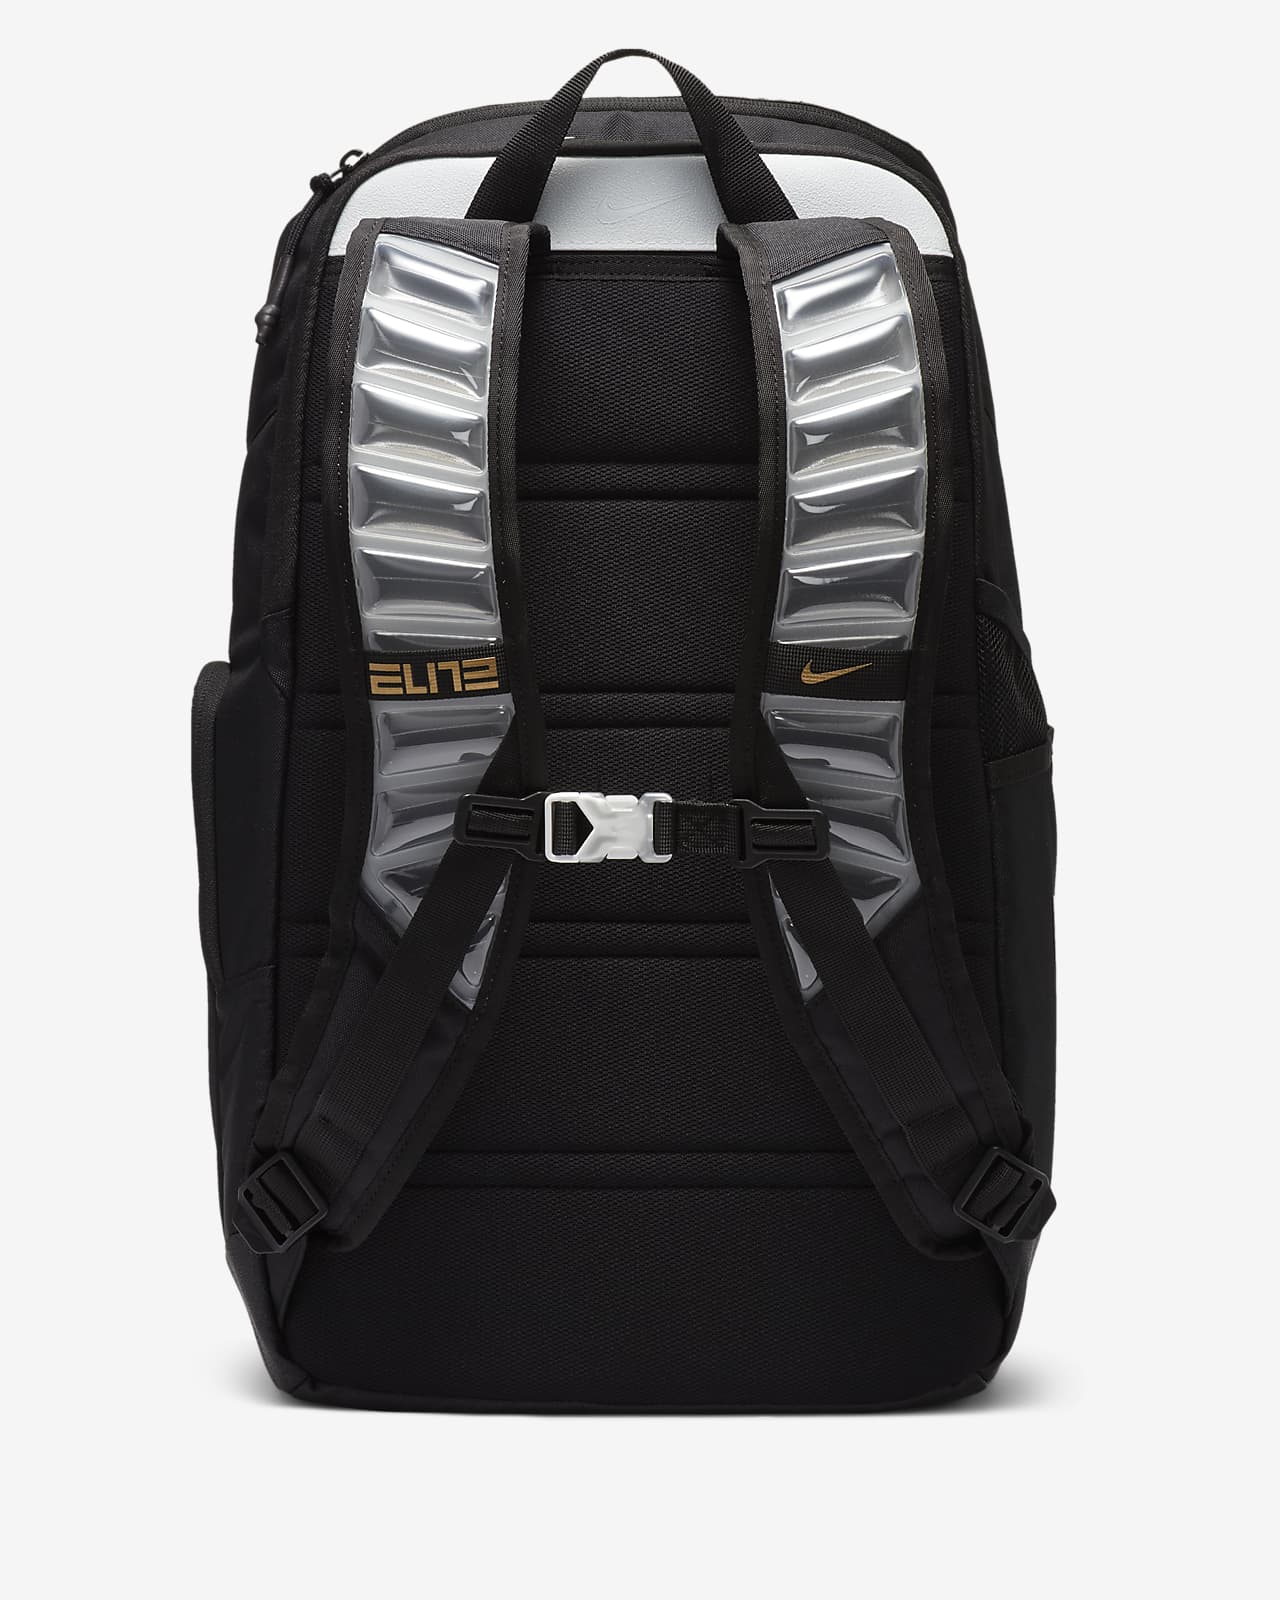 Nike Elite Pro Basketball Backpack. Nike GB